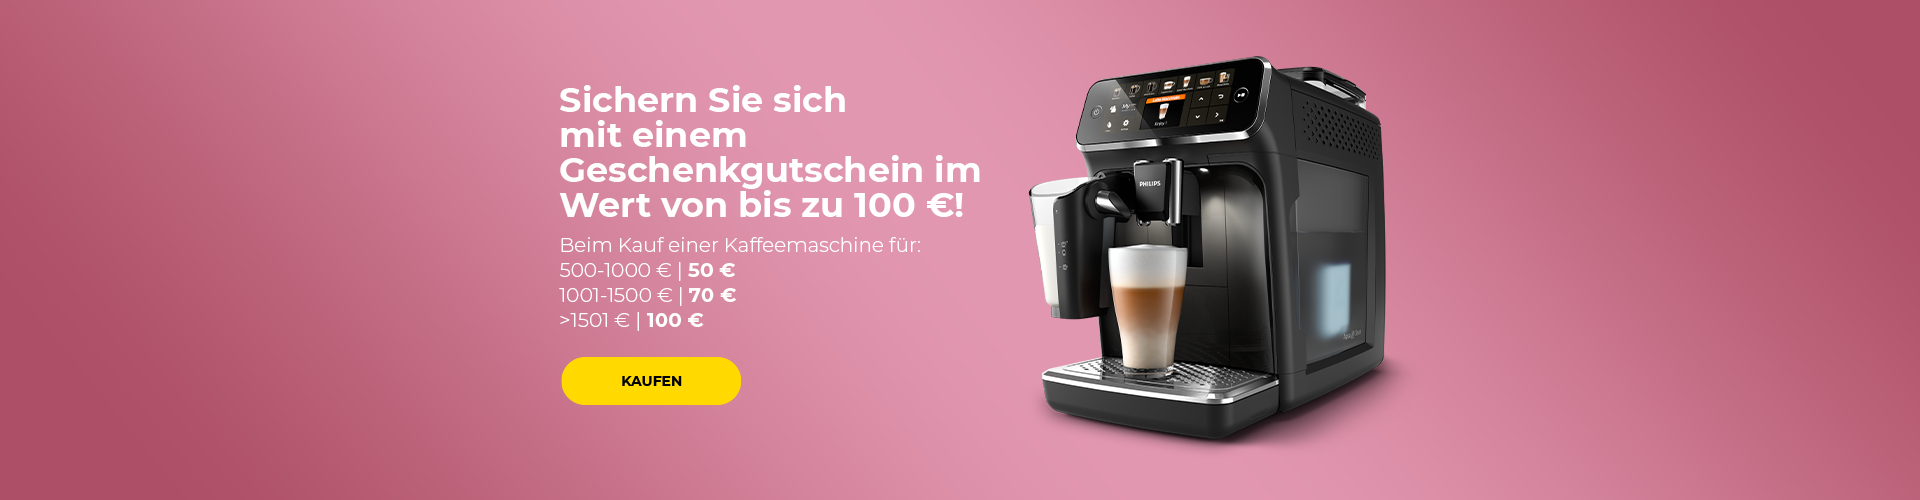 Erhalten Sie einen Gutschein im Wert von bis zu 100 € beim Kauf einer Kaffeemaschine im Wert von über 500 €.